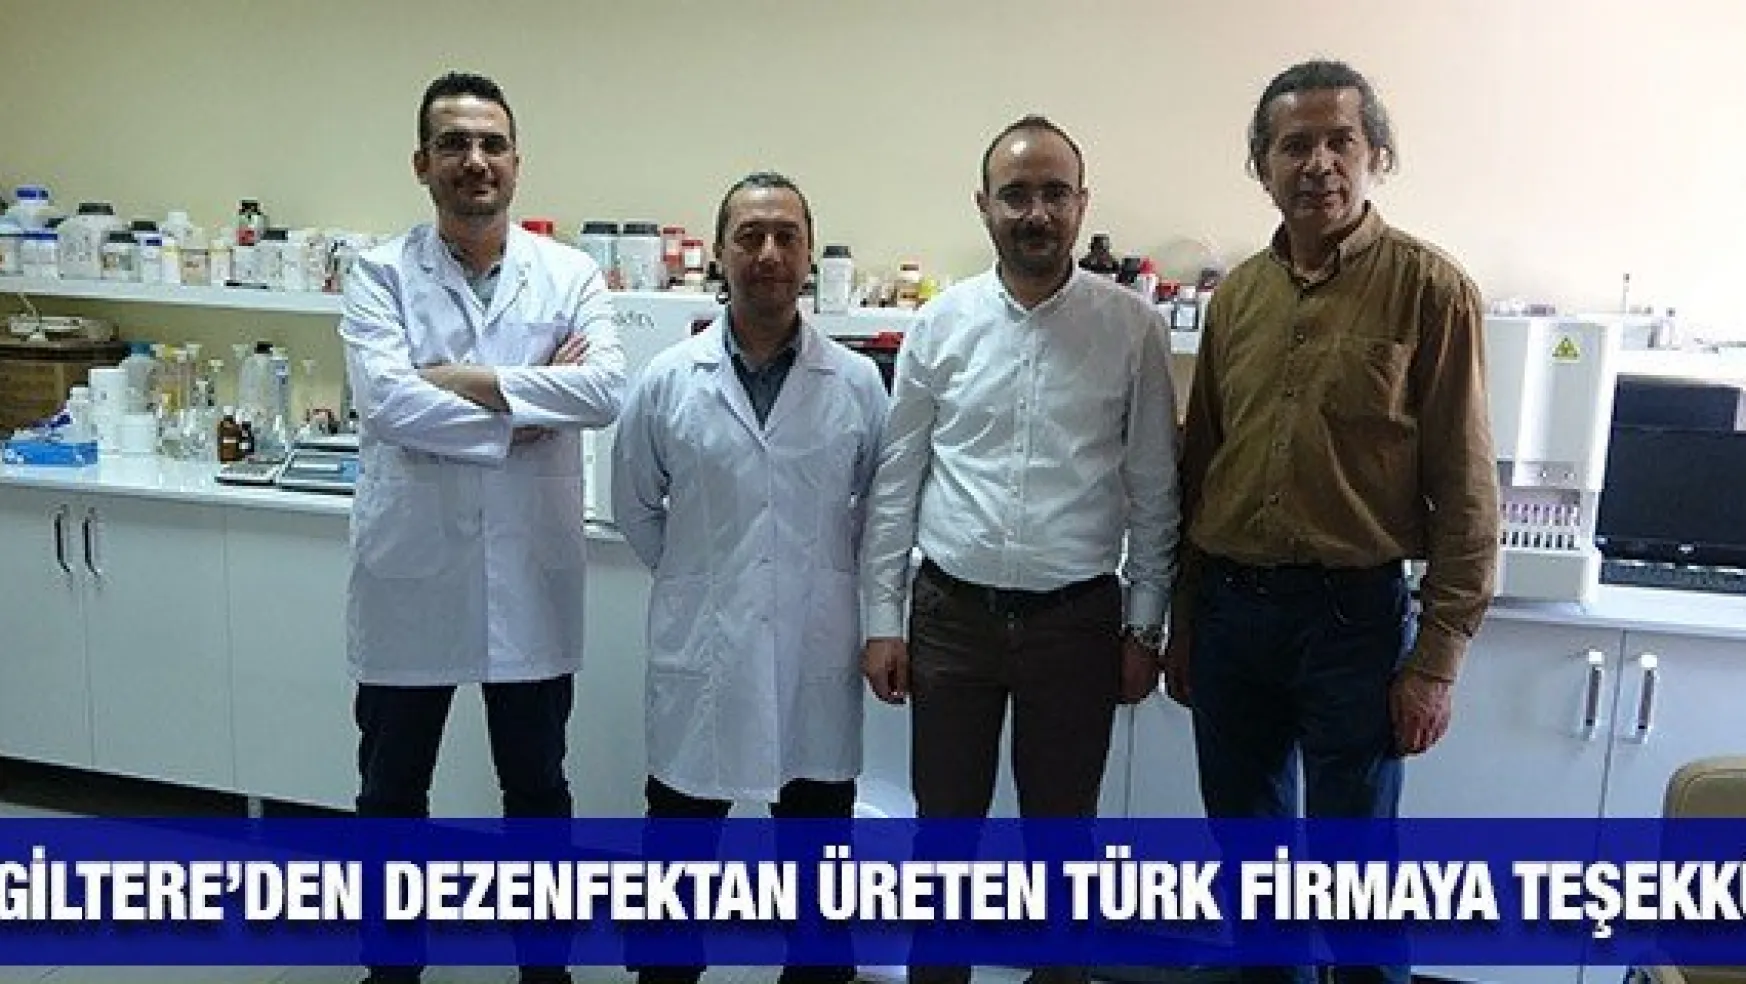 İngiltere'den dezenfektan üreten Türk firmaya teşekkür